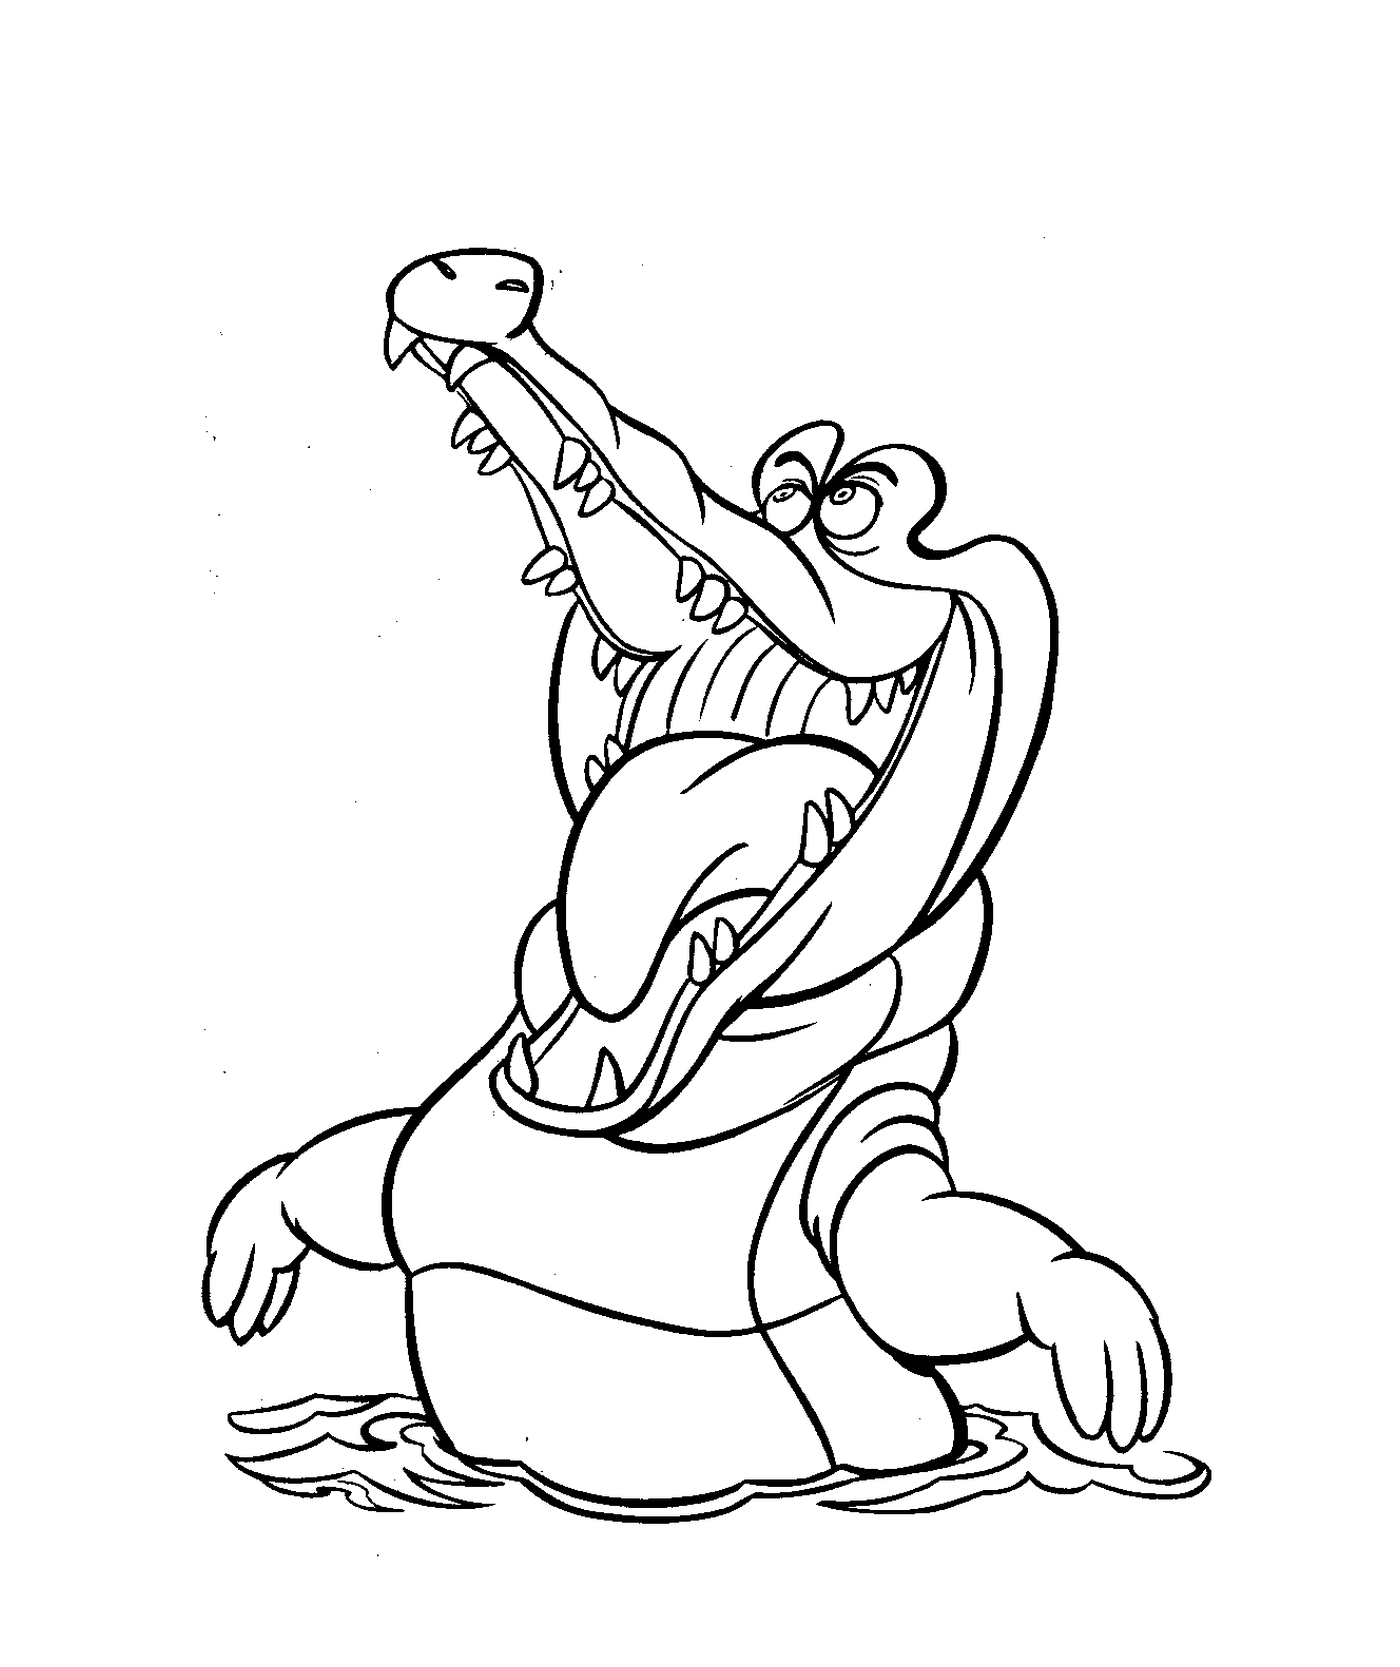   Un crocodile de Peter Pan, les personnages Disney pour enfants 